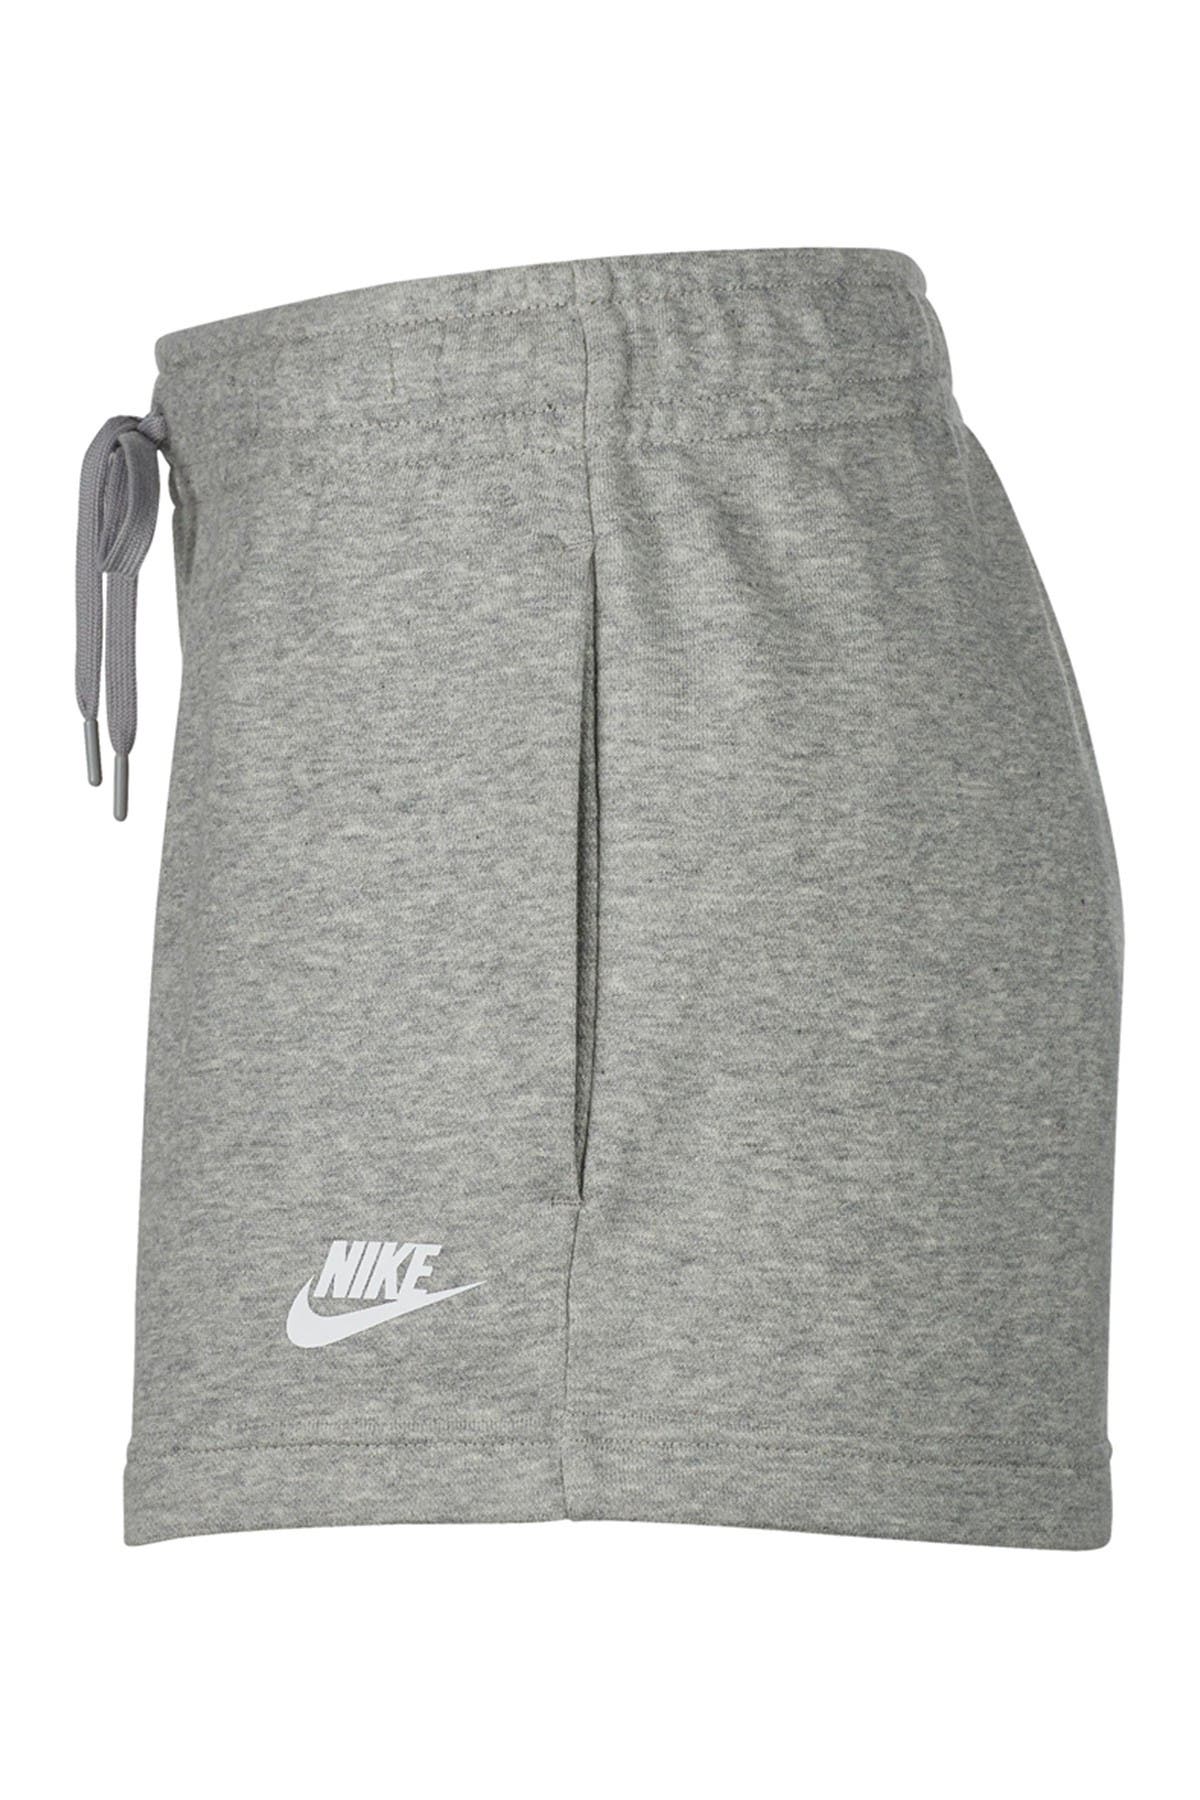 Nike | Sportswear Club Fleece Shorts | Nordstrom Rack